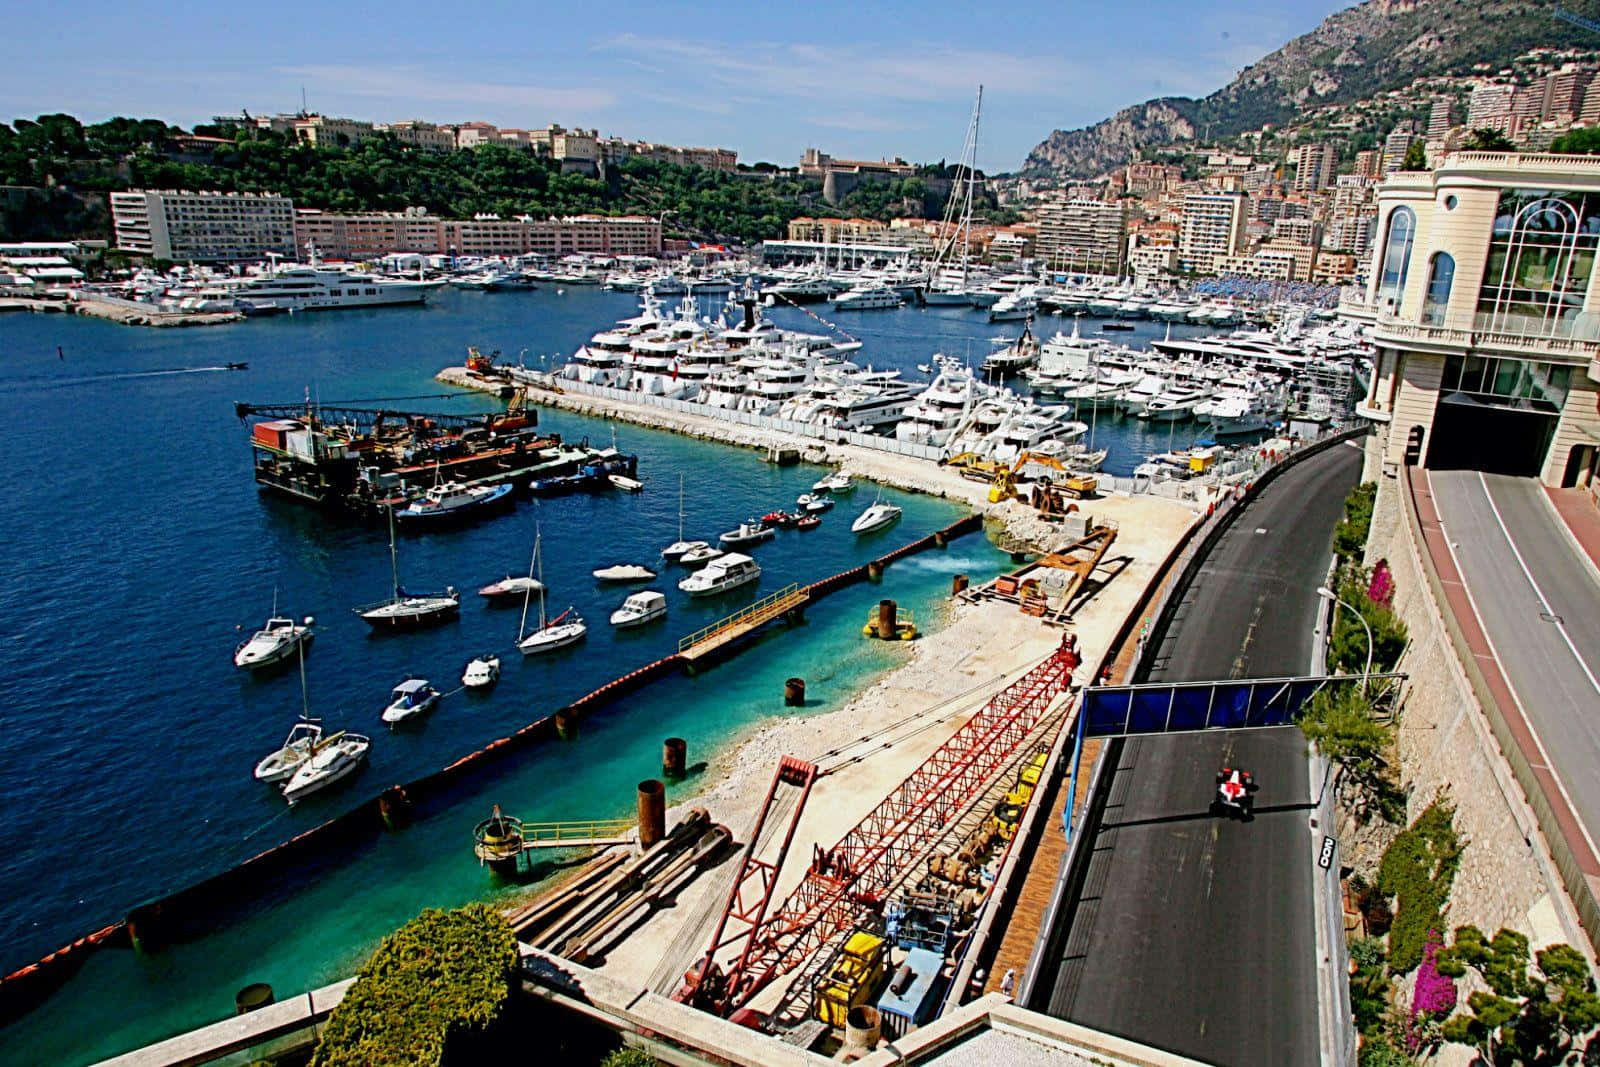 F1 Grand Prix Monaco Picture